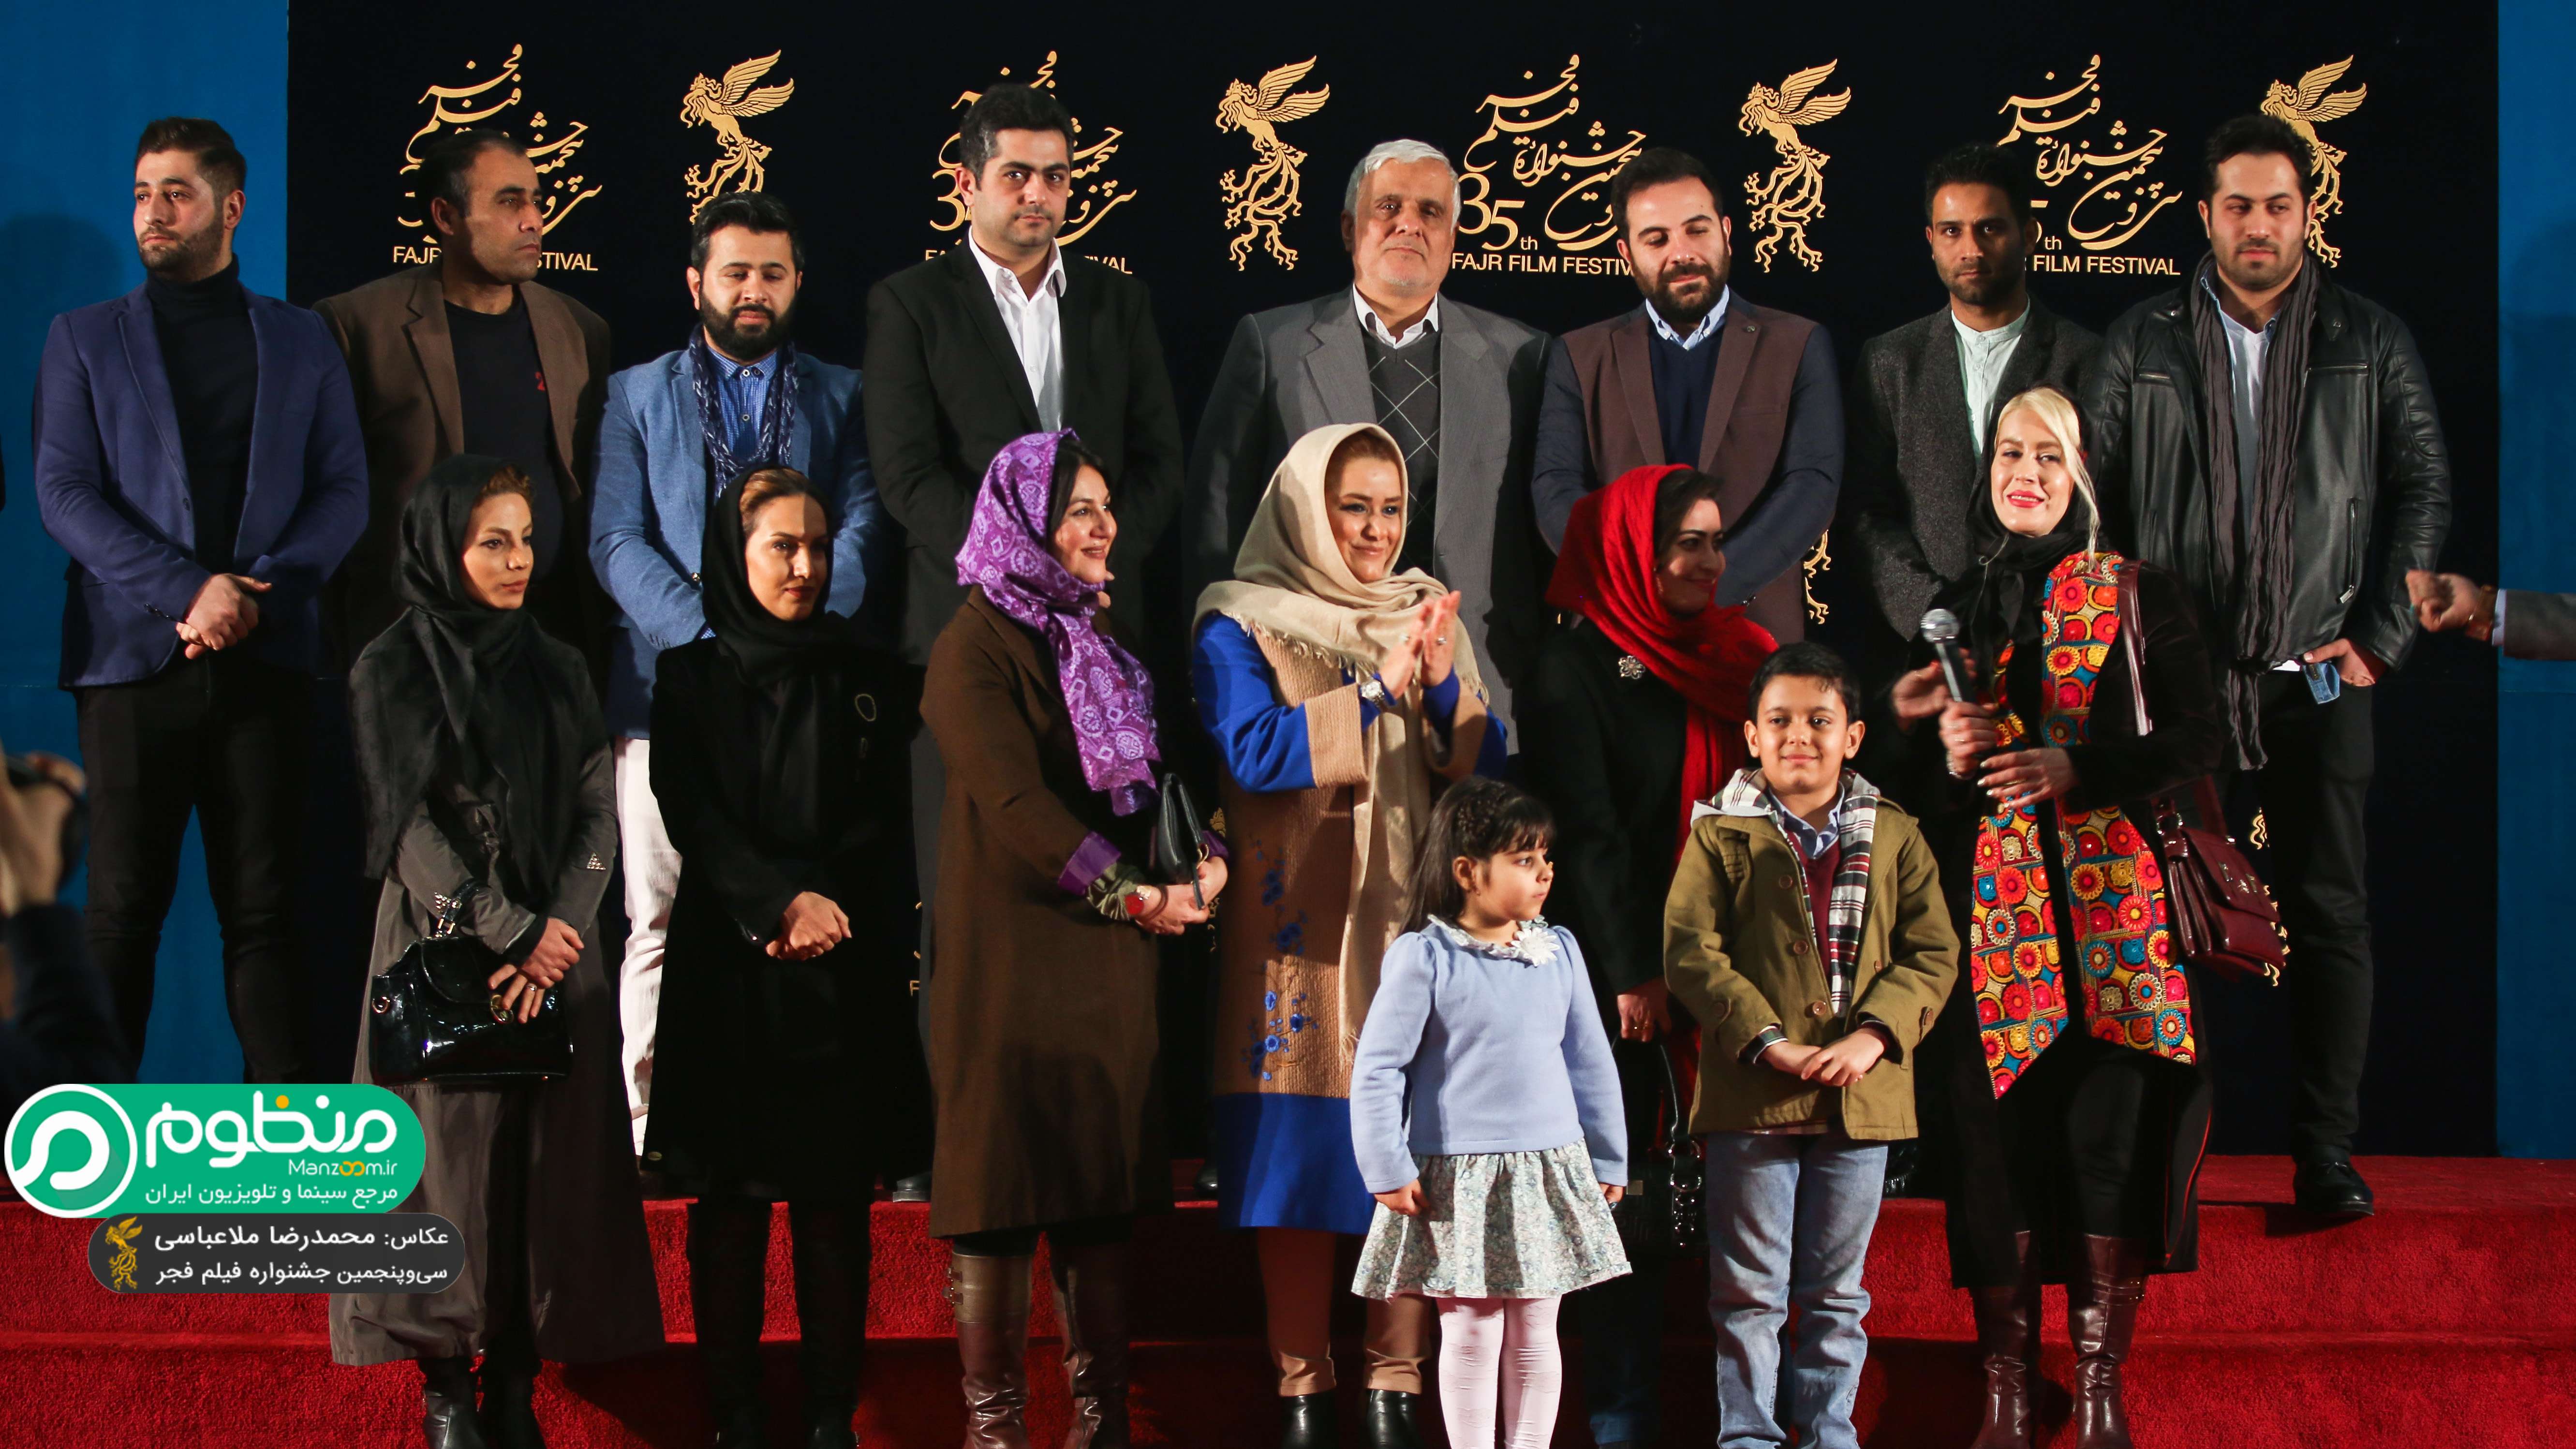 کاوه احمدی در فرش قرمز فیلم سینمایی دریاچه ماهی به همراه مریم دوستی، ستاره اسکندری و سعید سعدی